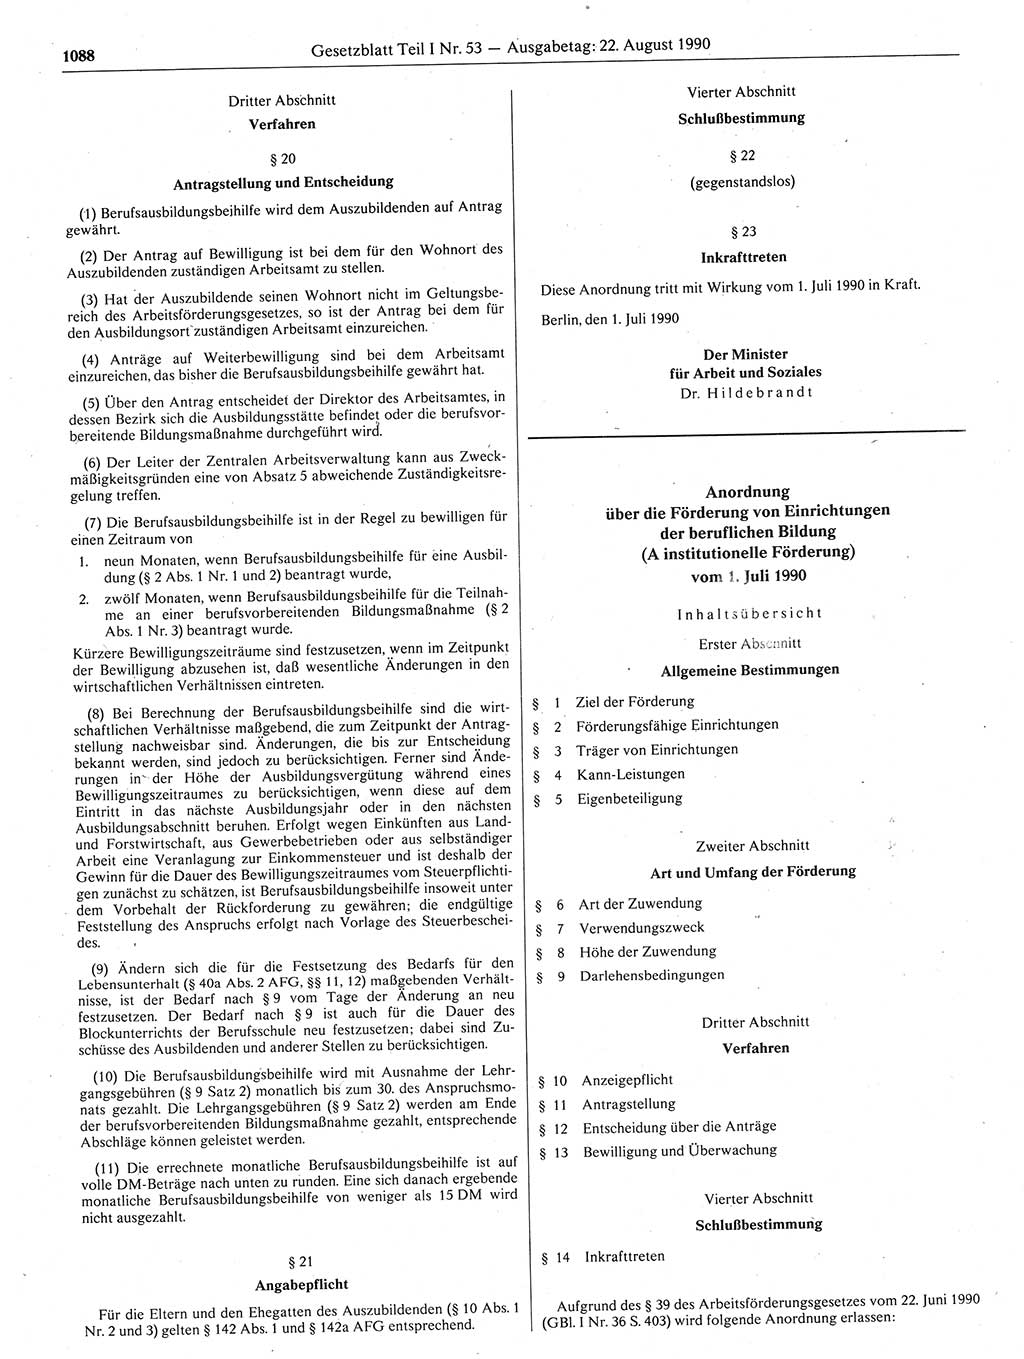 Gesetzblatt (GBl.) der Deutschen Demokratischen Republik (DDR) Teil Ⅰ 1990, Seite 1088 (GBl. DDR Ⅰ 1990, S. 1088)